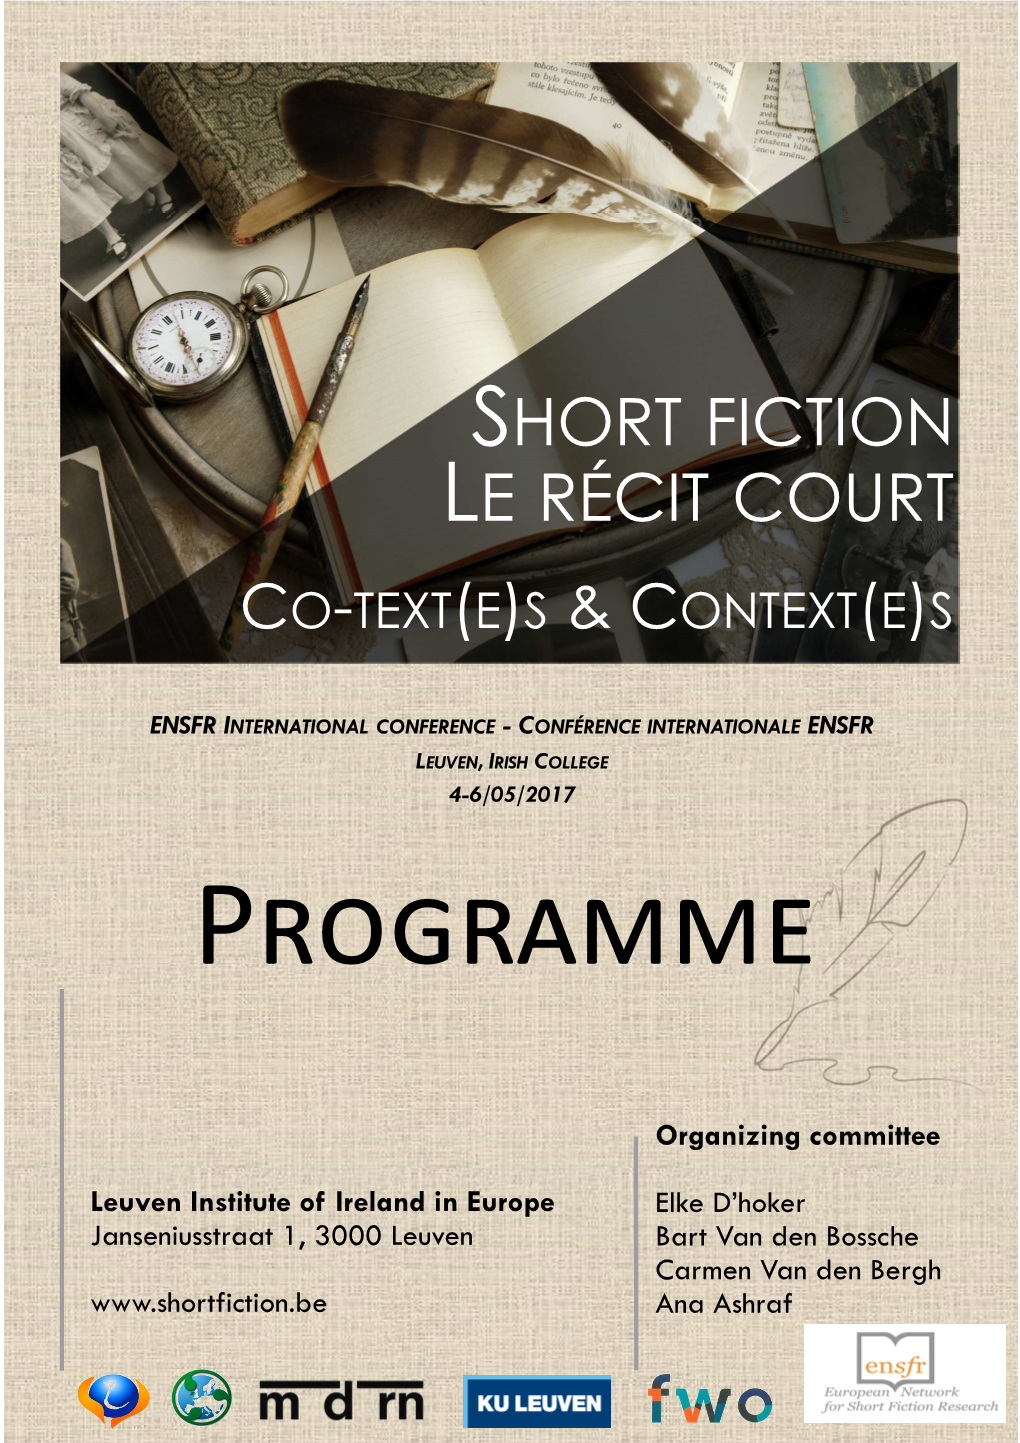 Short Fiction Le Récit Court Co-Text(E)S & Context(E)S